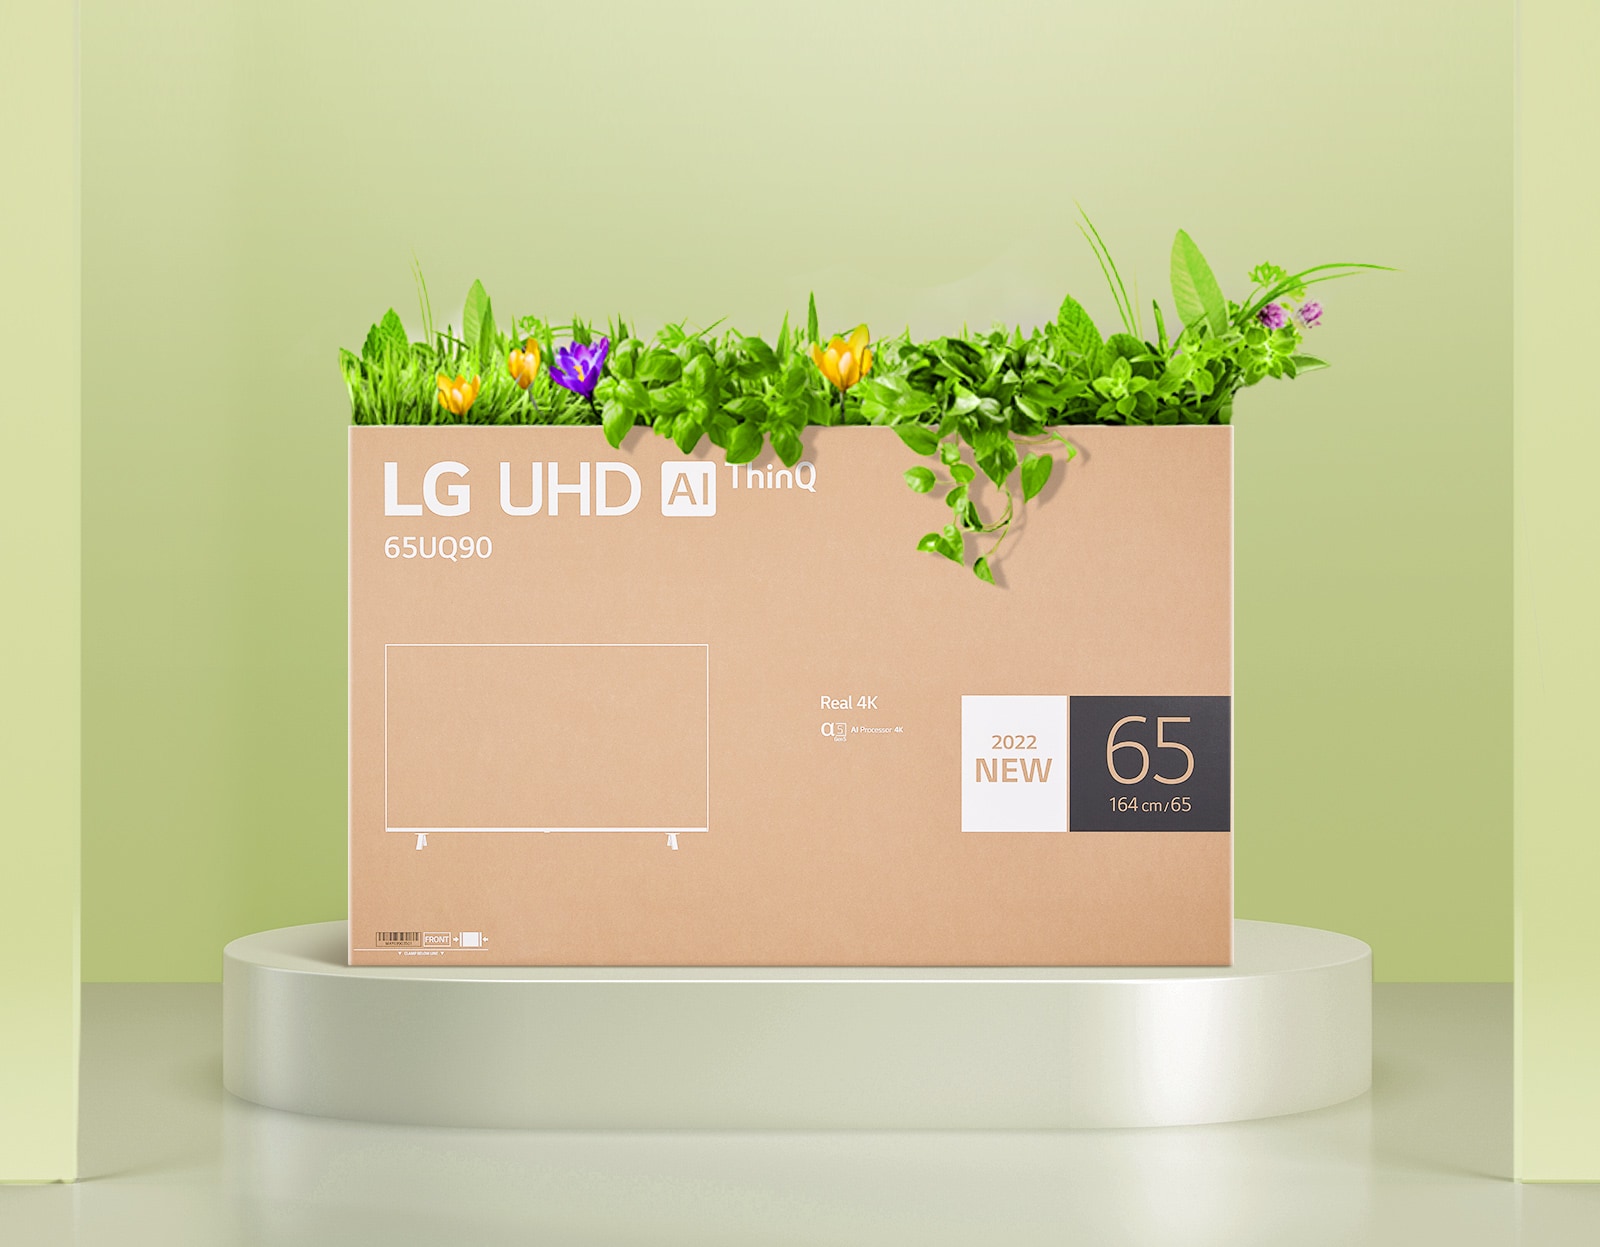 Škatla za rože, izdelana iz embalaže LG UHD monitorja.